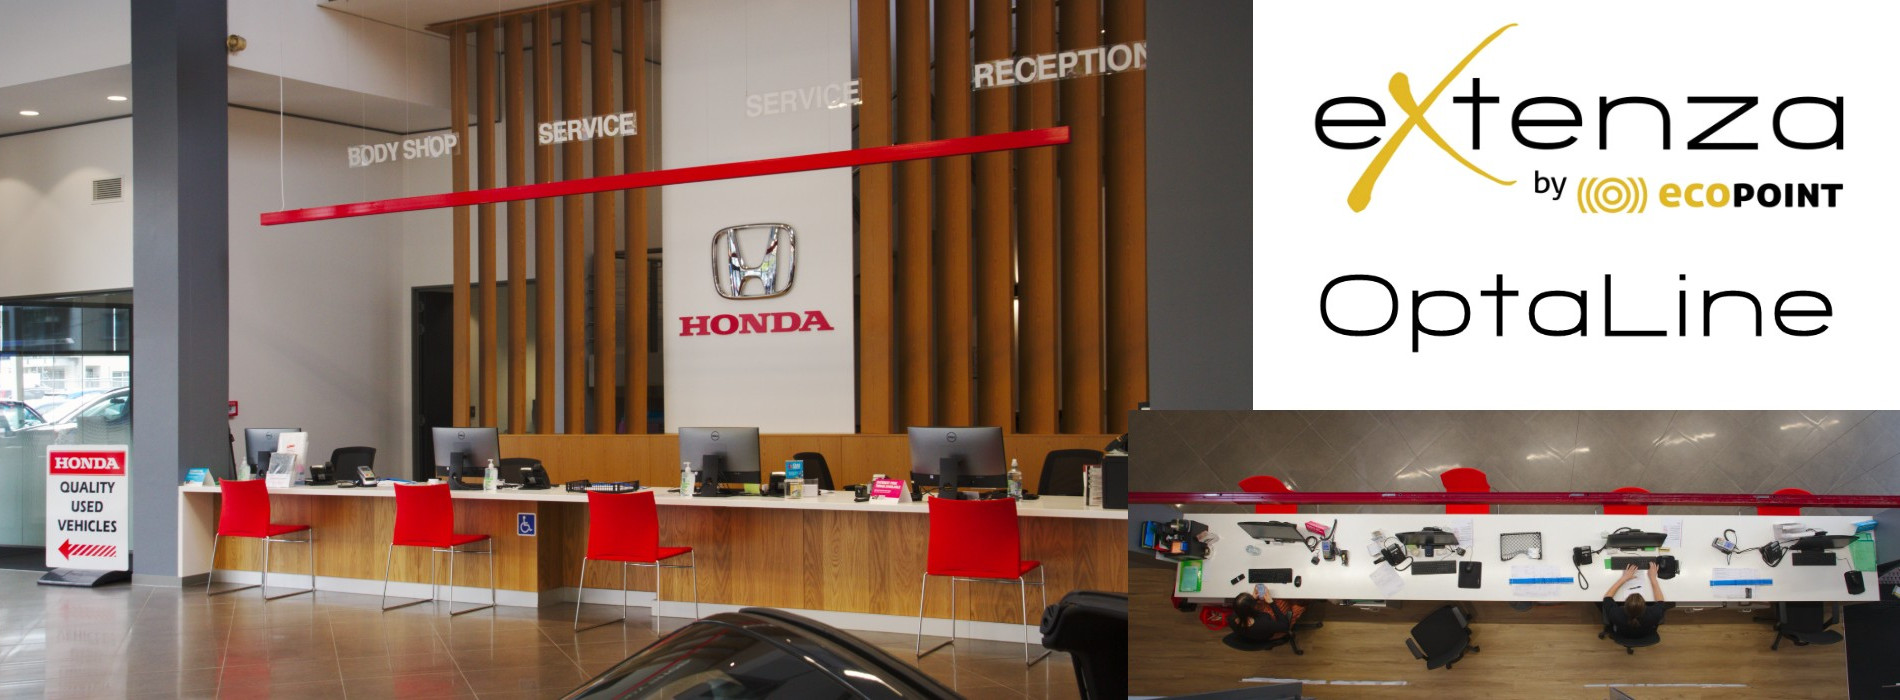 Honda Reception OptaLine Header